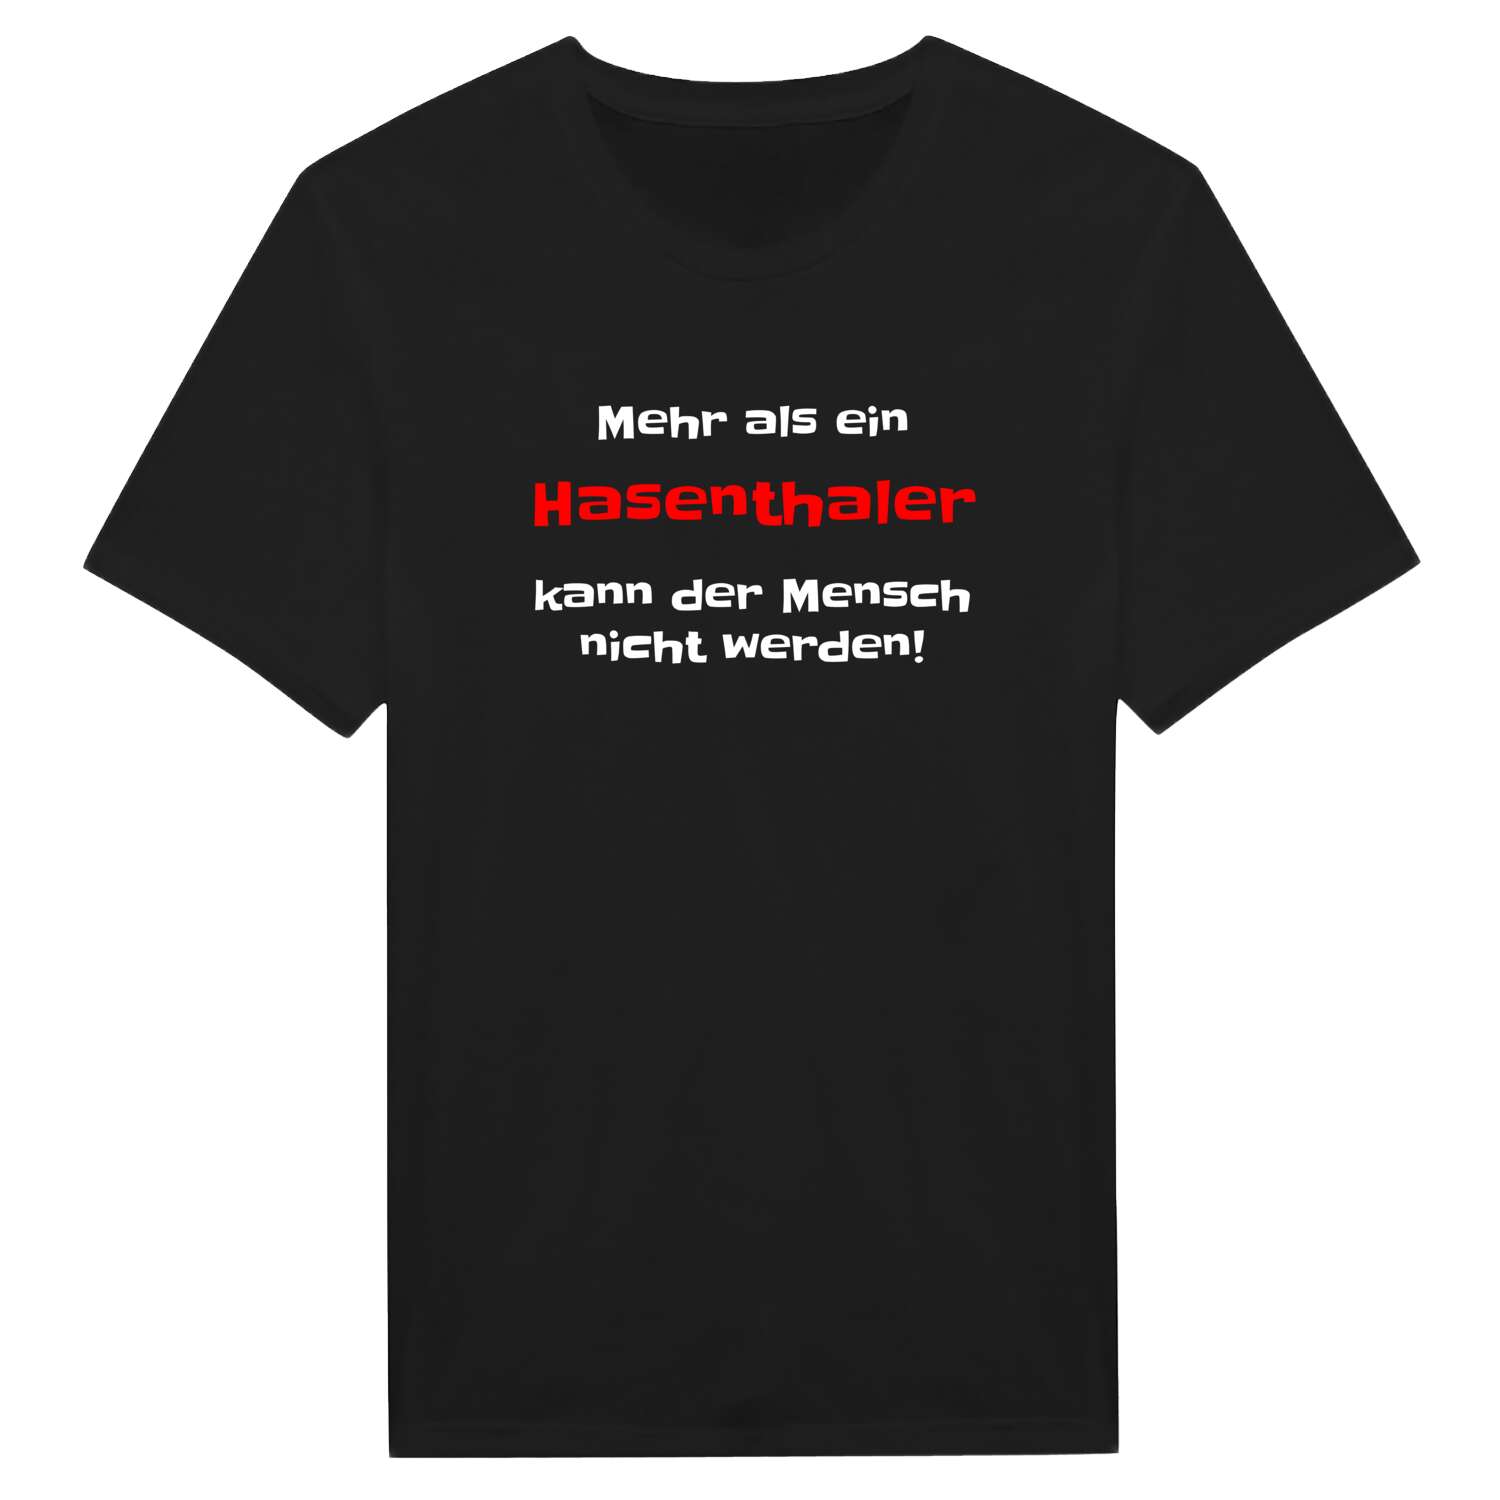 Hasenthal T-Shirt »Mehr als ein«